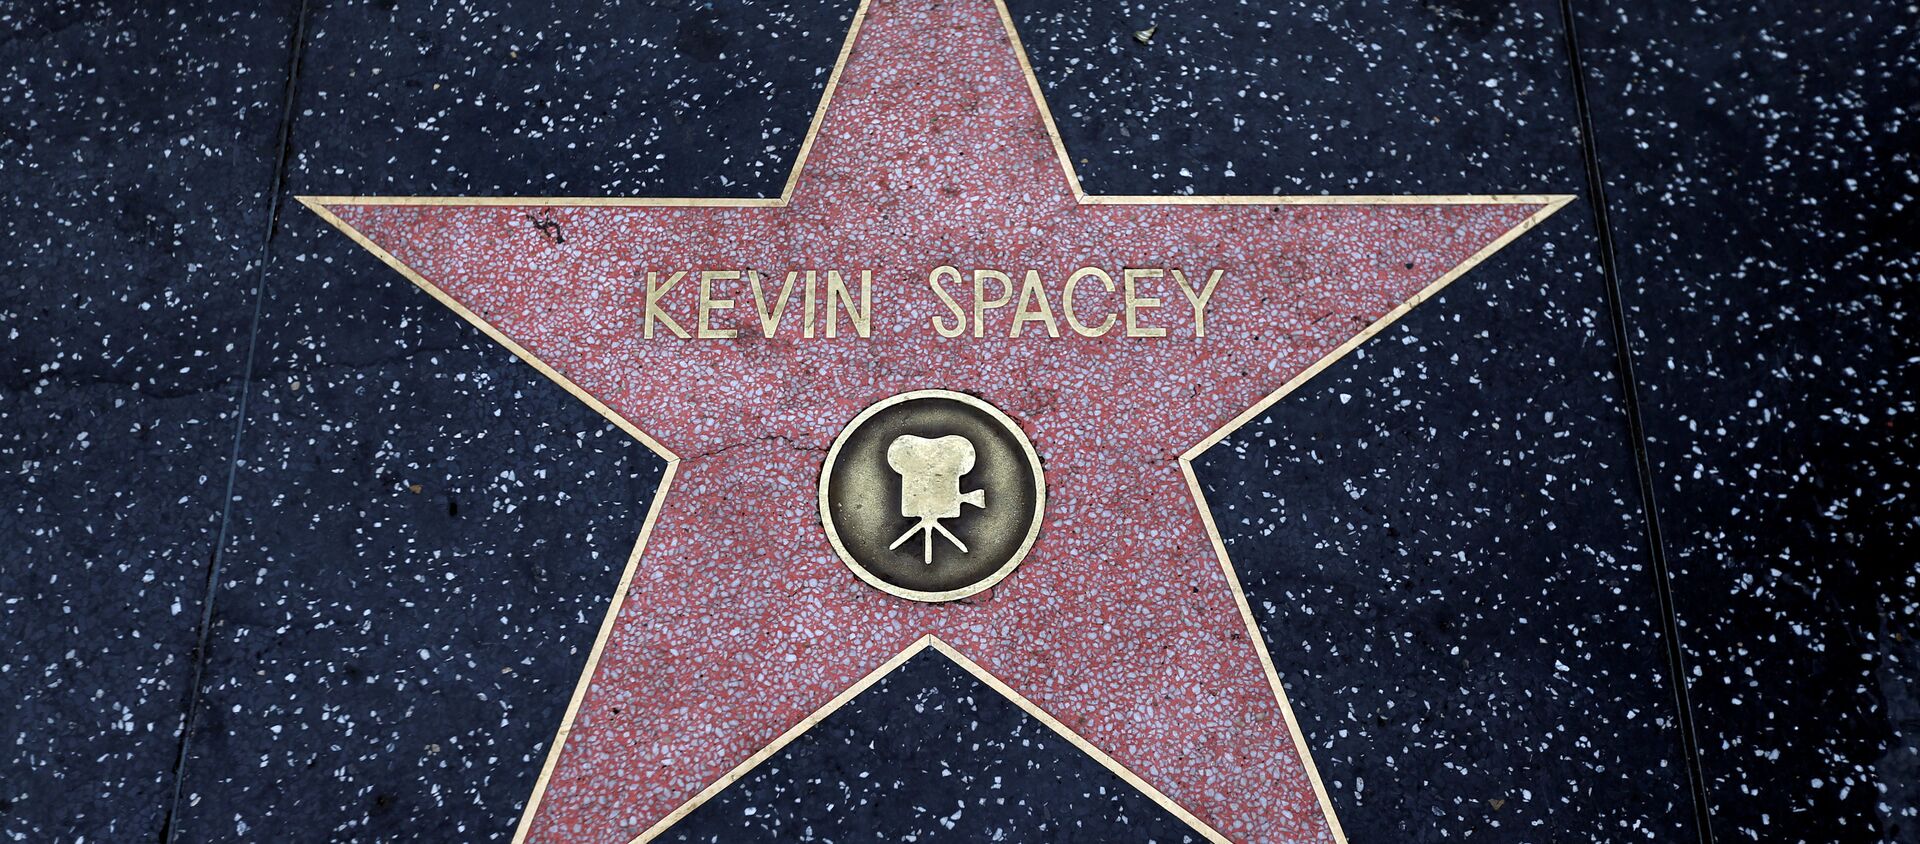 Kevin Spacey - Sputnik Türkiye, 1920, 01.11.2017